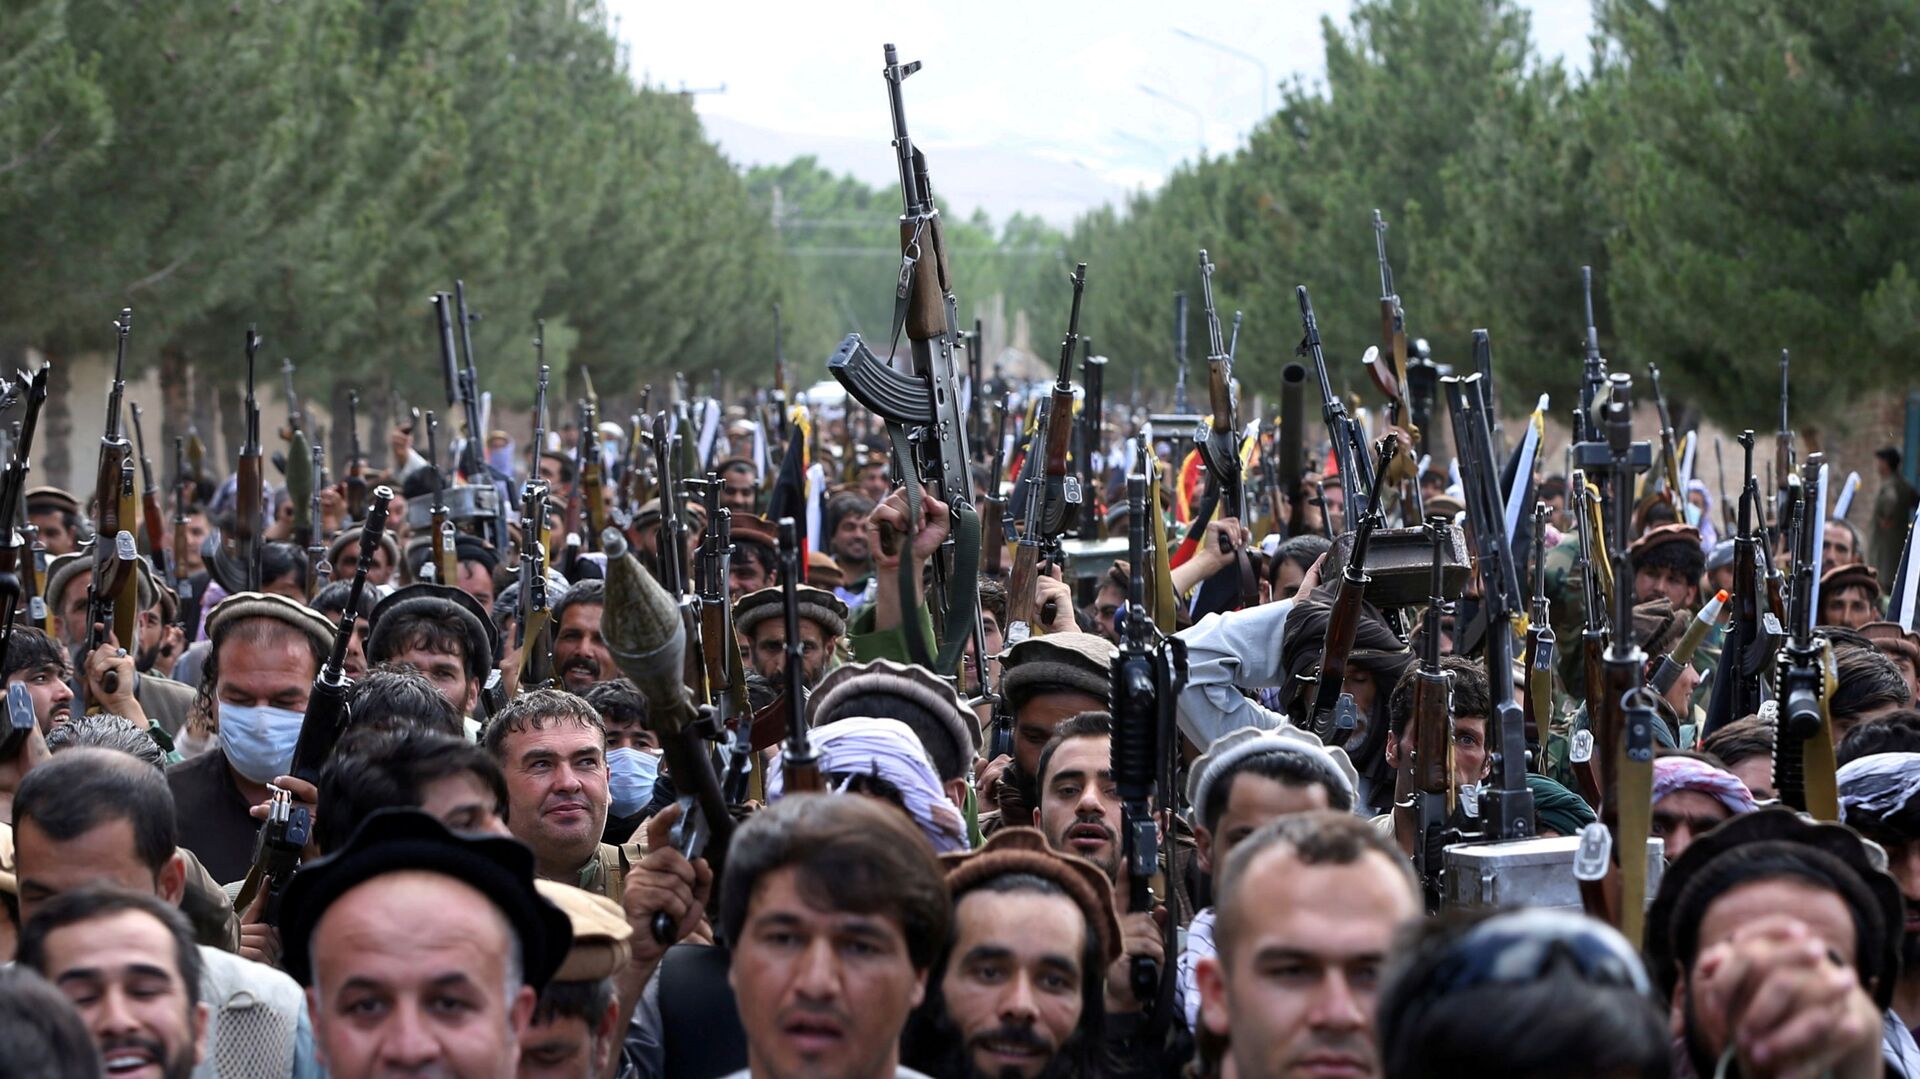 Сотни вооруженных людей на окраине Кабула, Афганистан, 23 июня 2021 года. - Sputnik Азербайджан, 1920, 25.06.2021